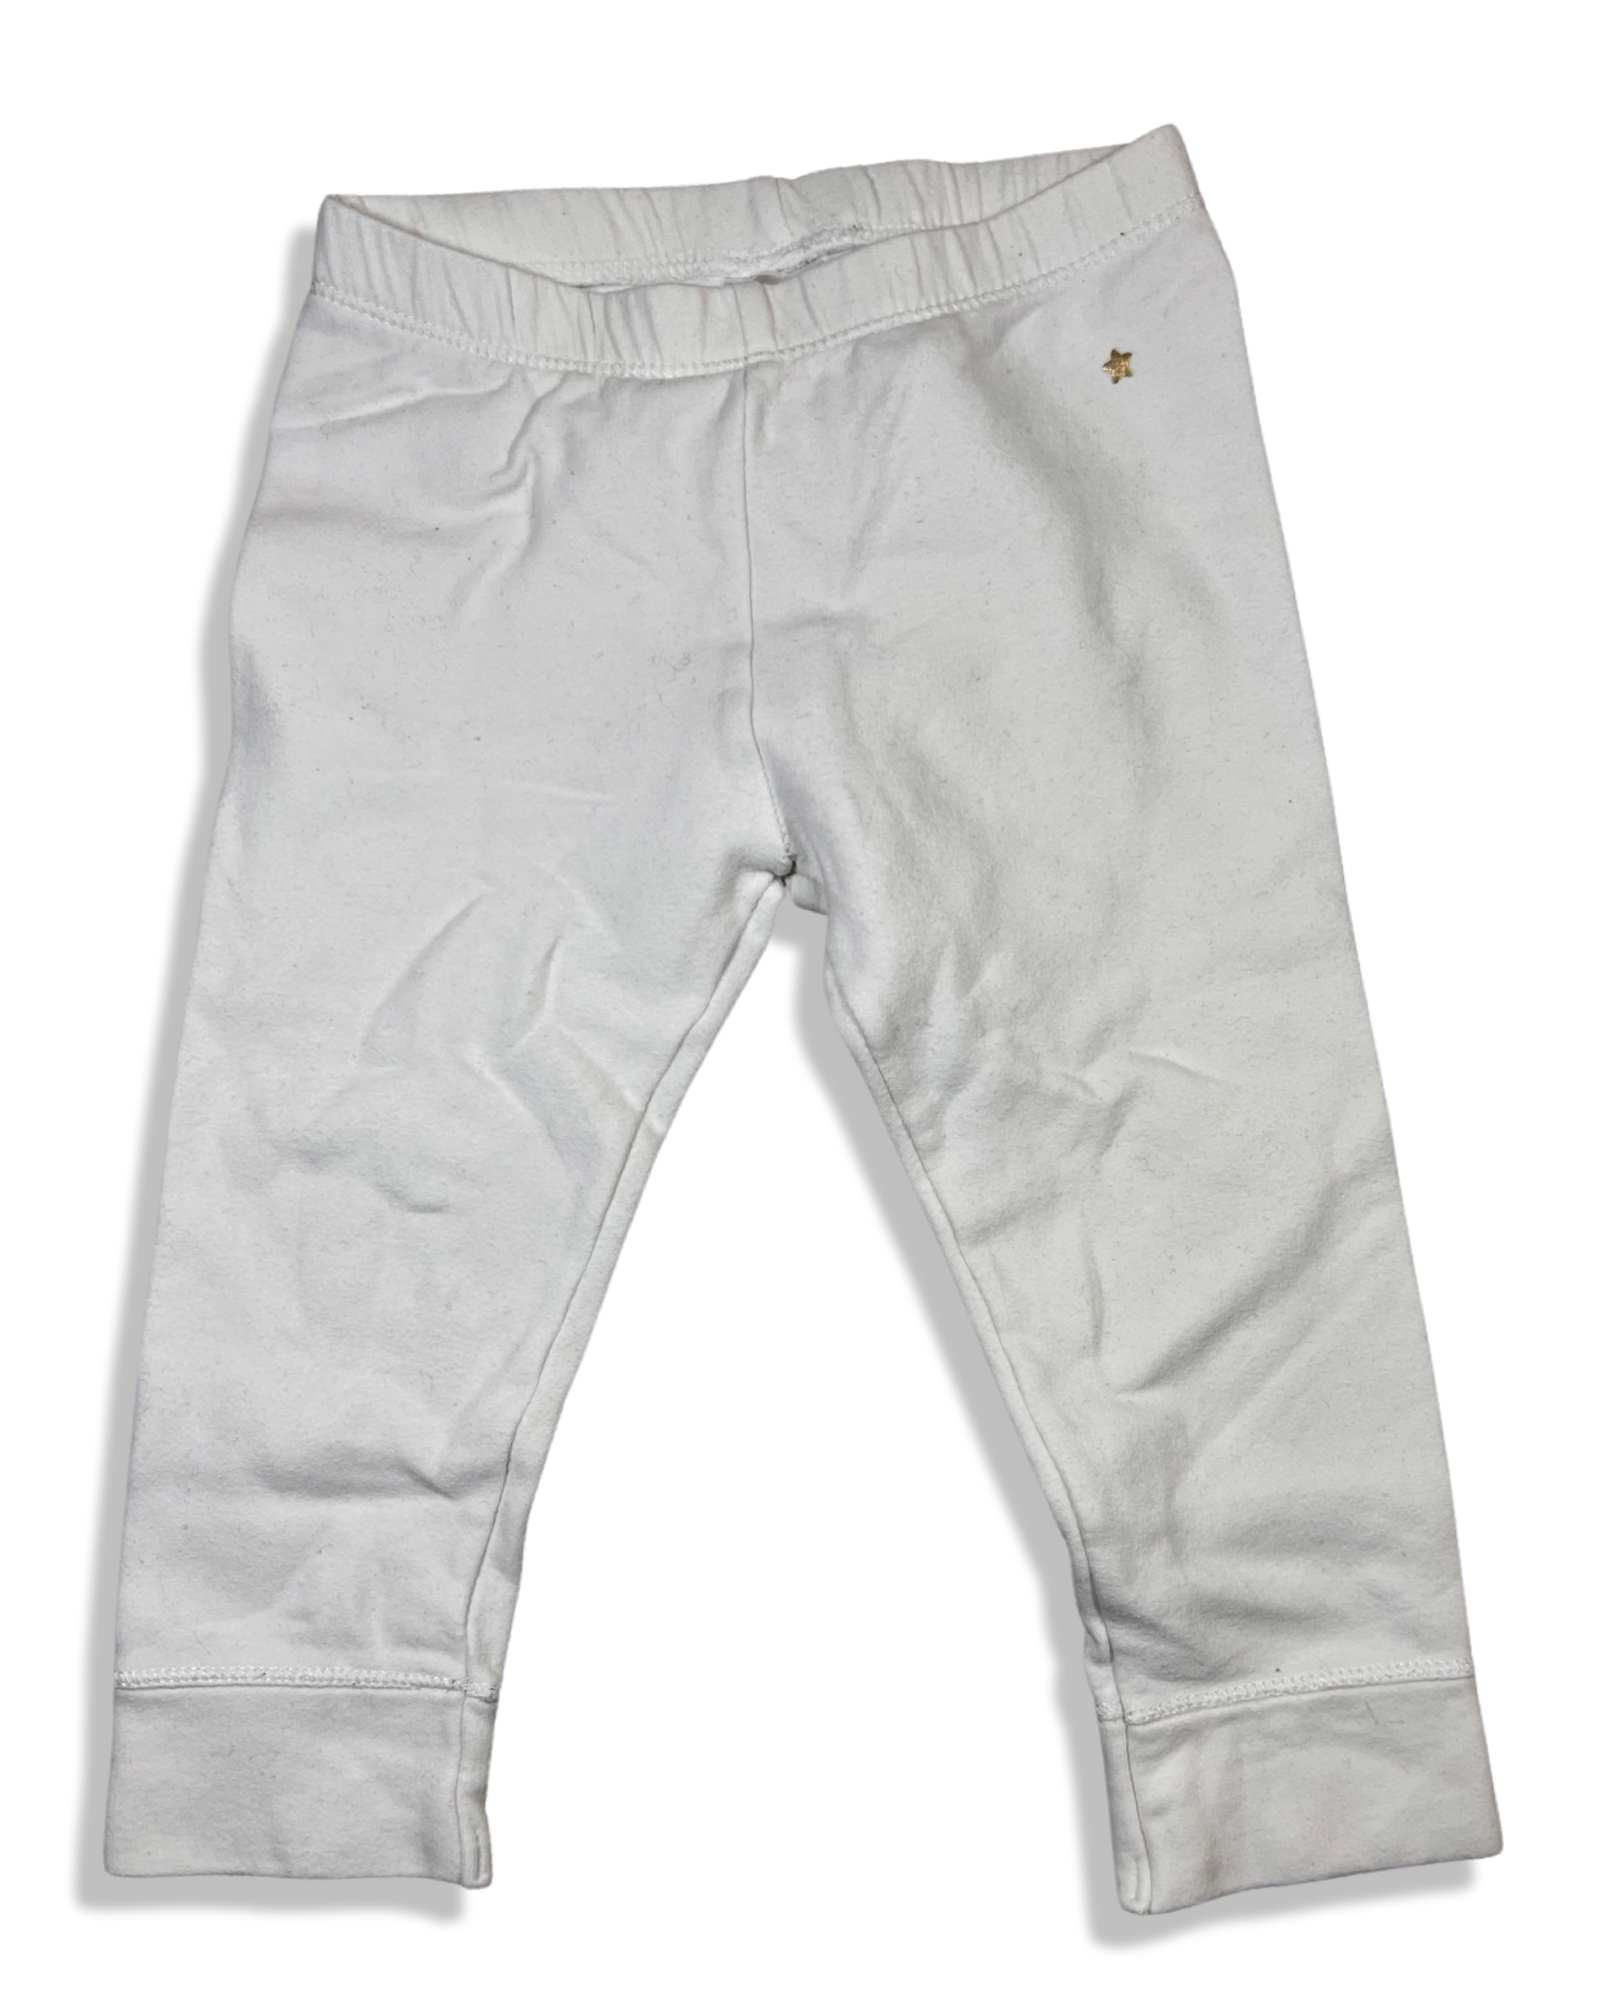 ZARA white leggings (12-18M)